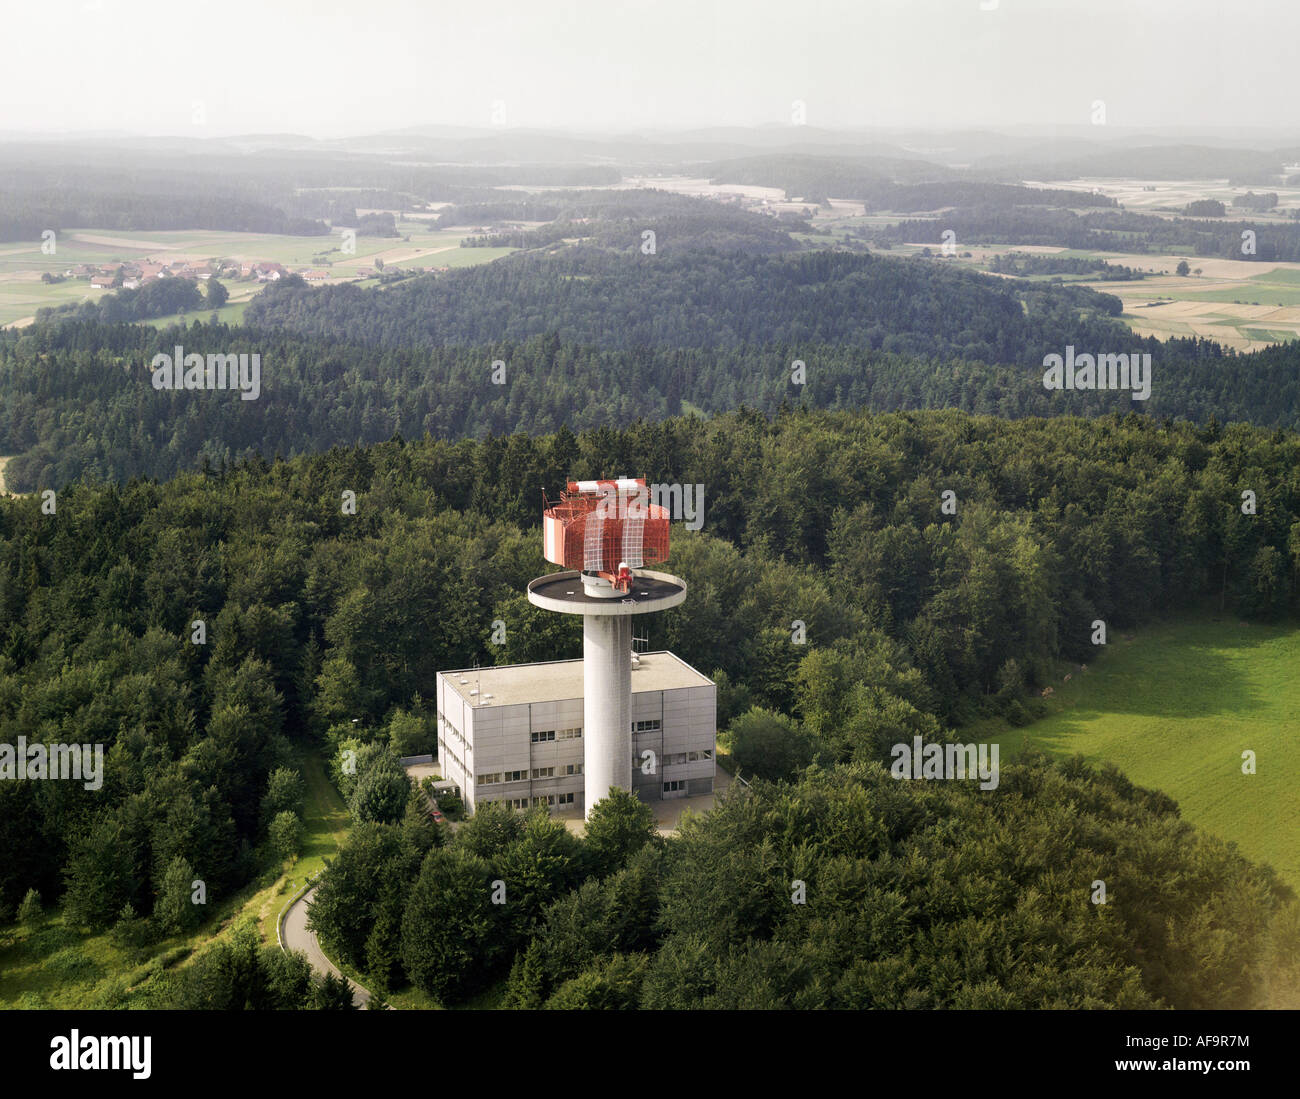 Le contrôle de la circulation aérienne, à l'unité radar près de Mittersberg, Germany Banque D'Images